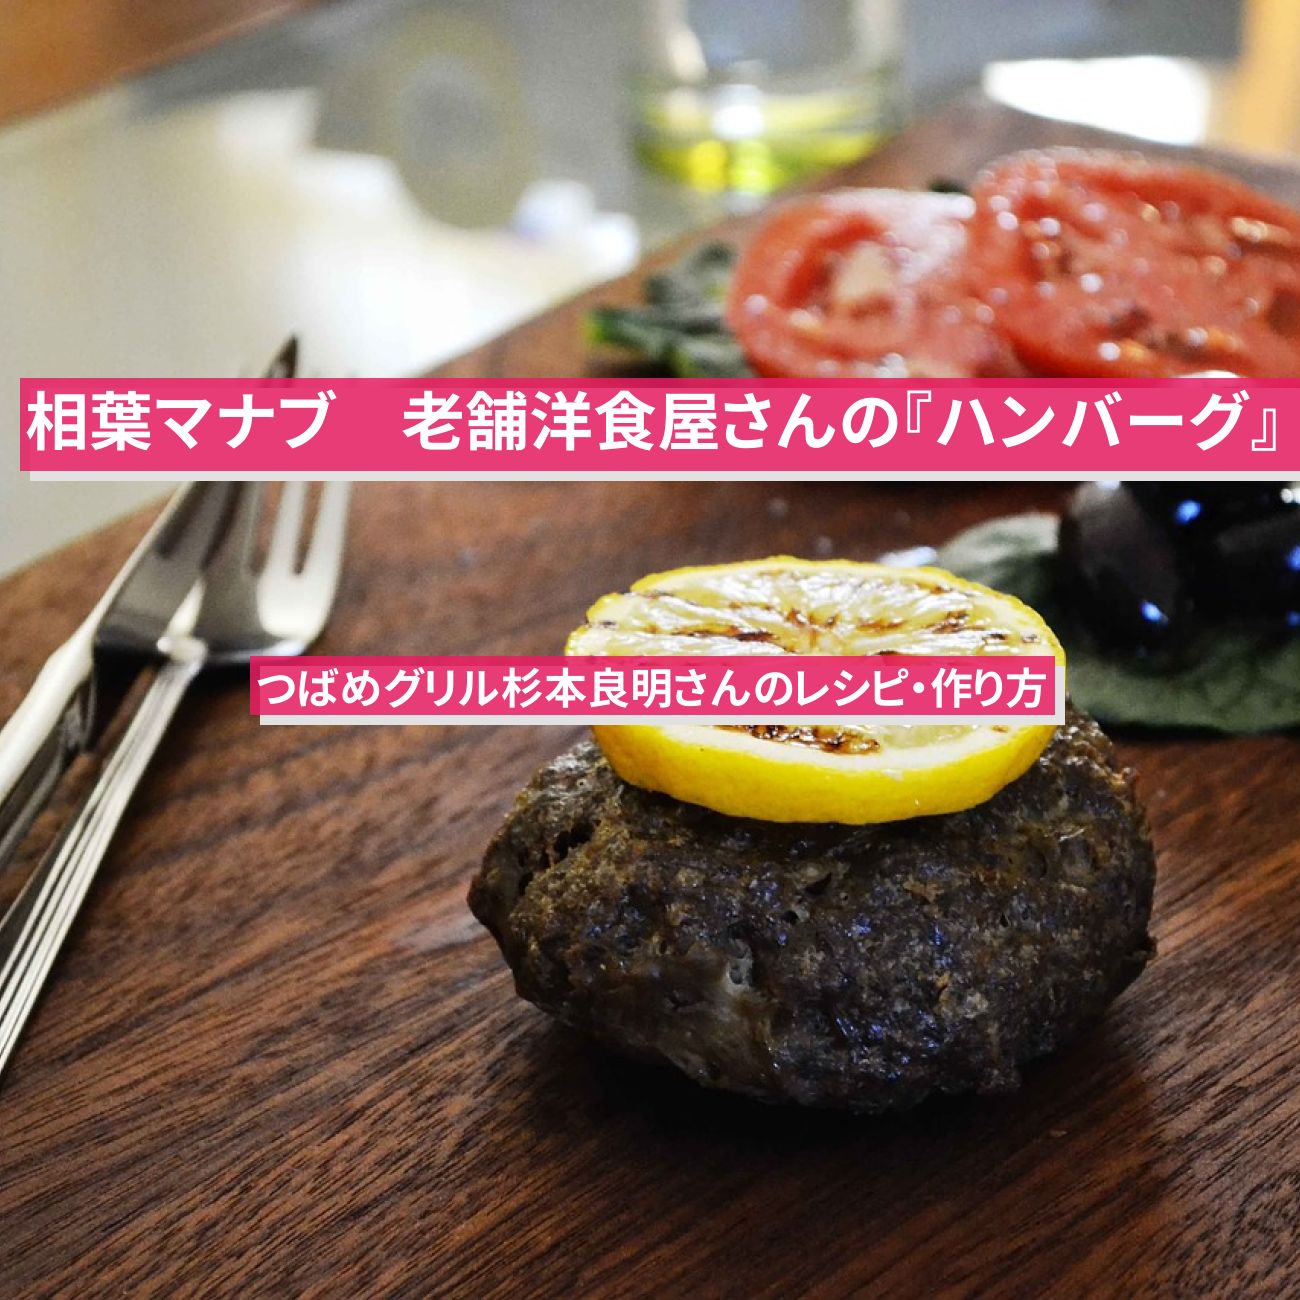 【相葉マナブ】つばめグリルの『ハンバーグ』杉本良明さんのレシピ・作り方